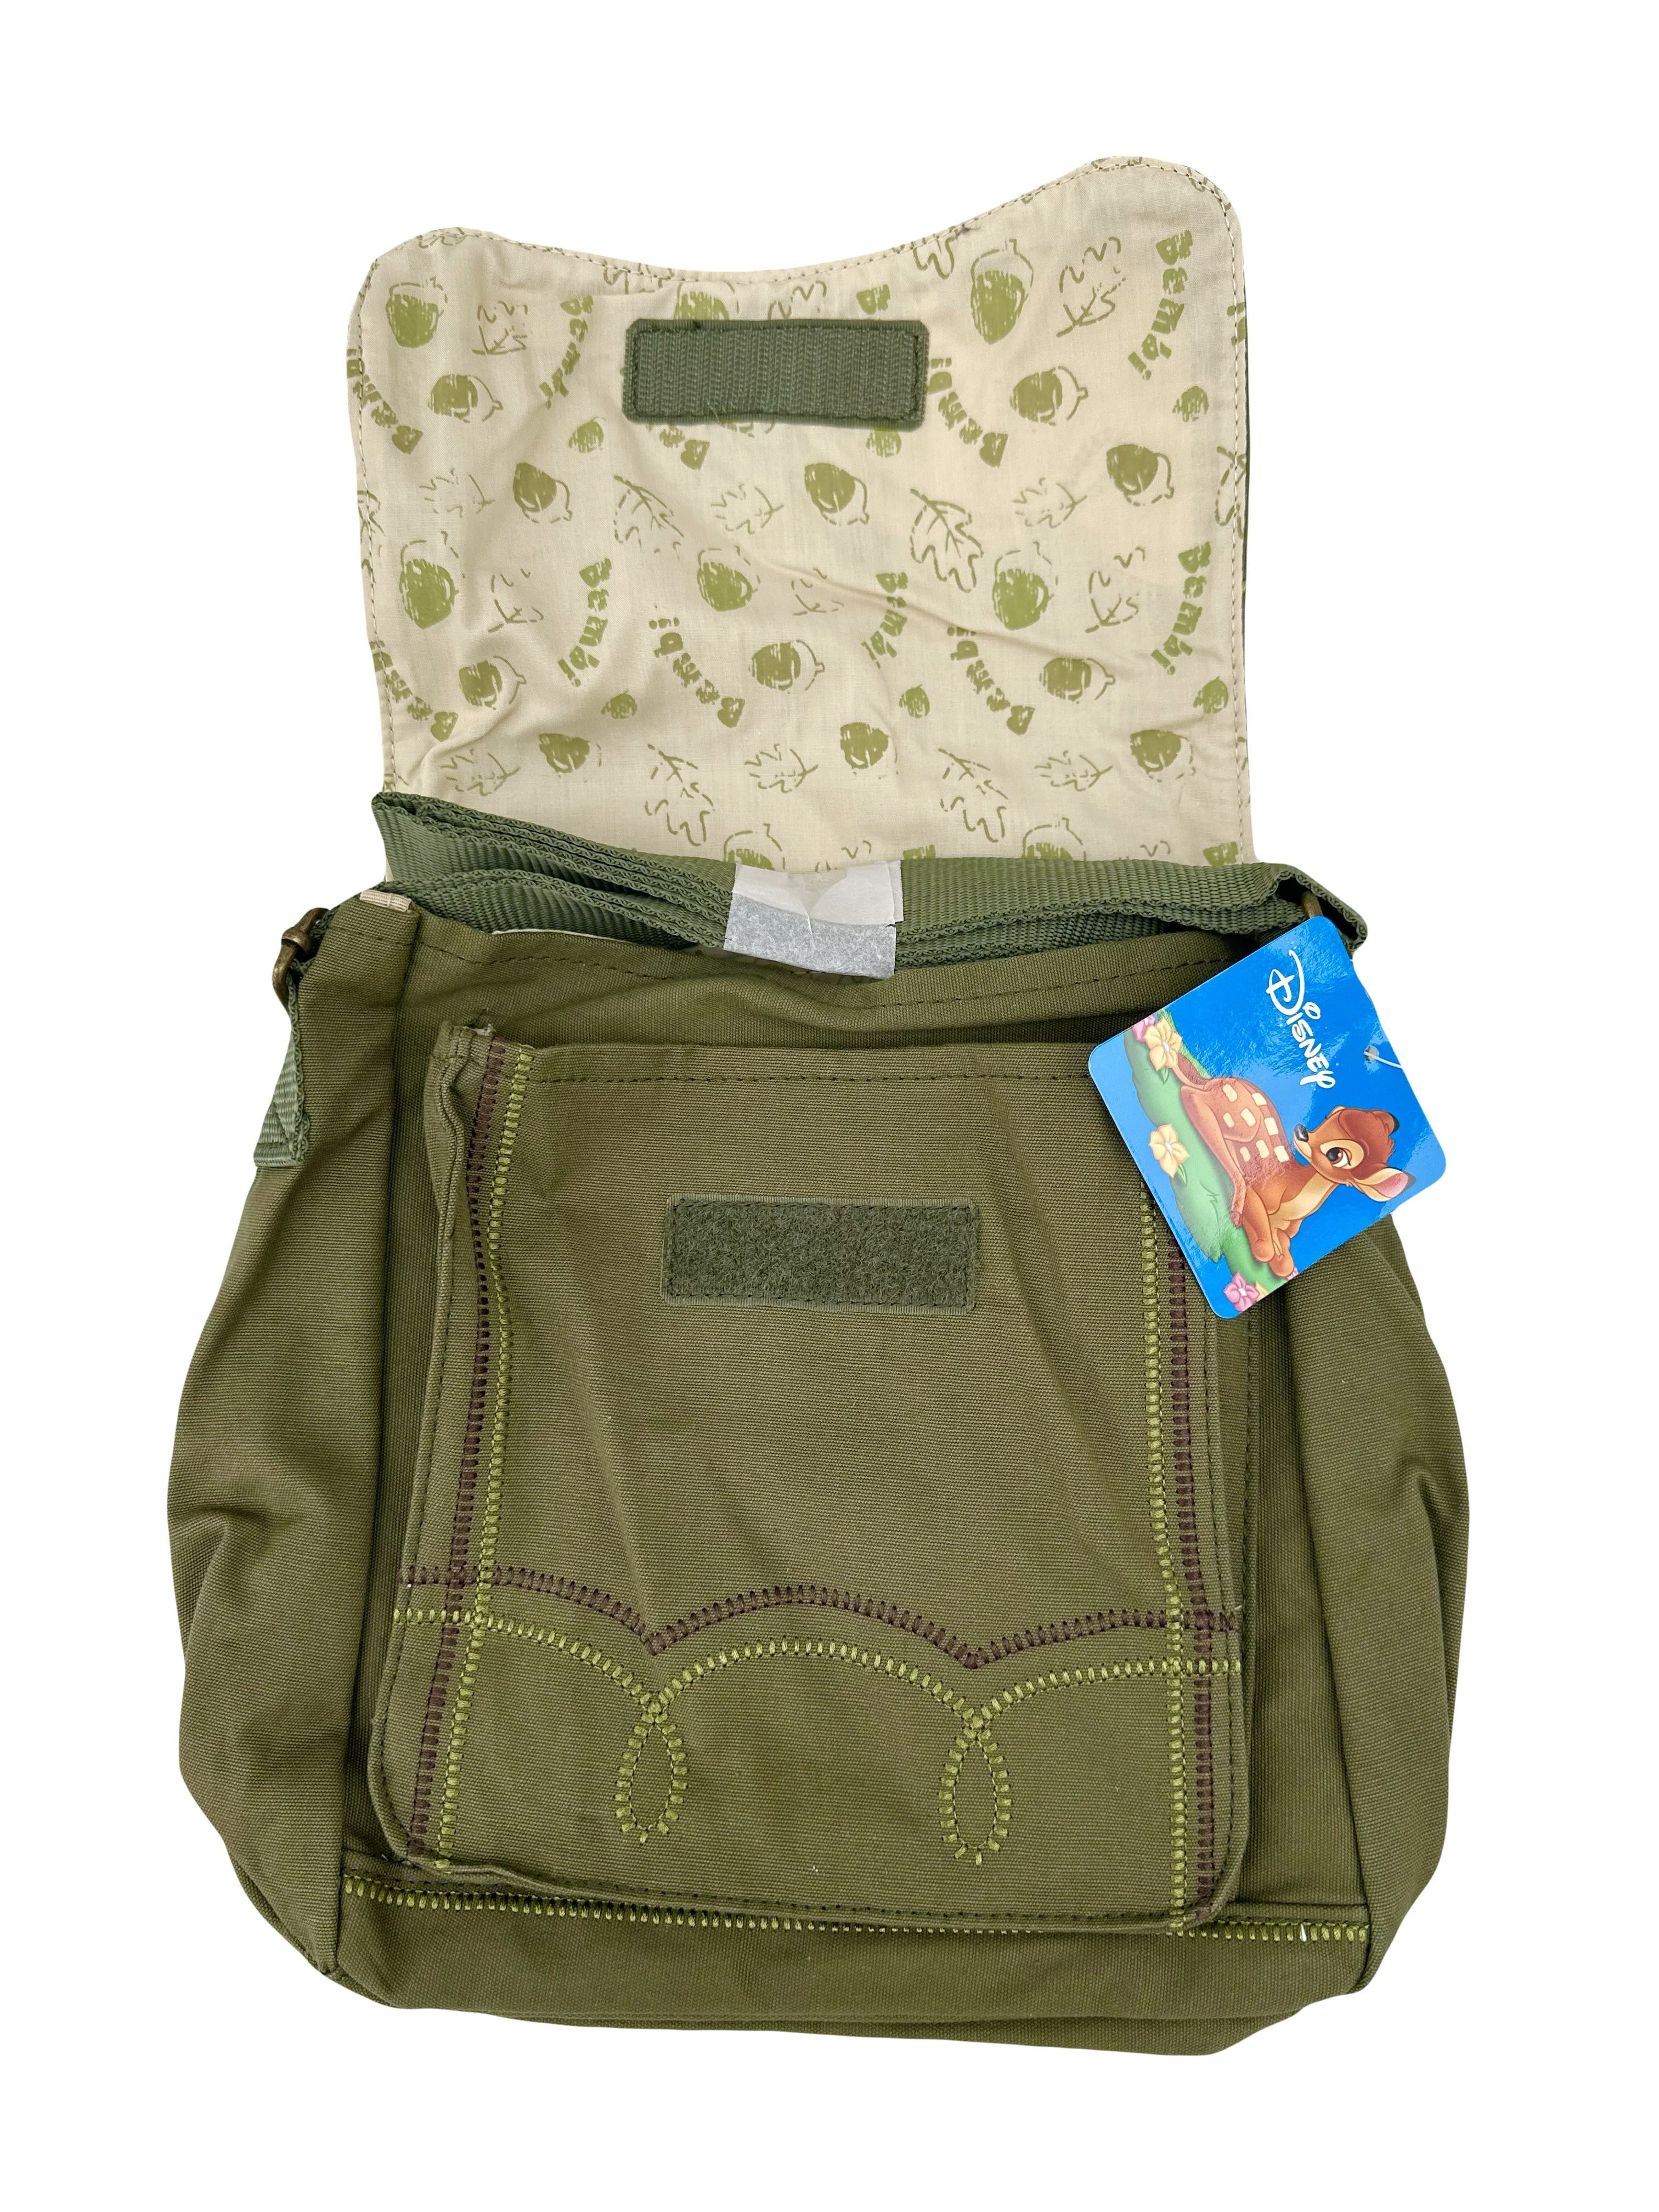 Disney Bambi Messenger Handbag Purse Bag - Camo Green Bambi Purse